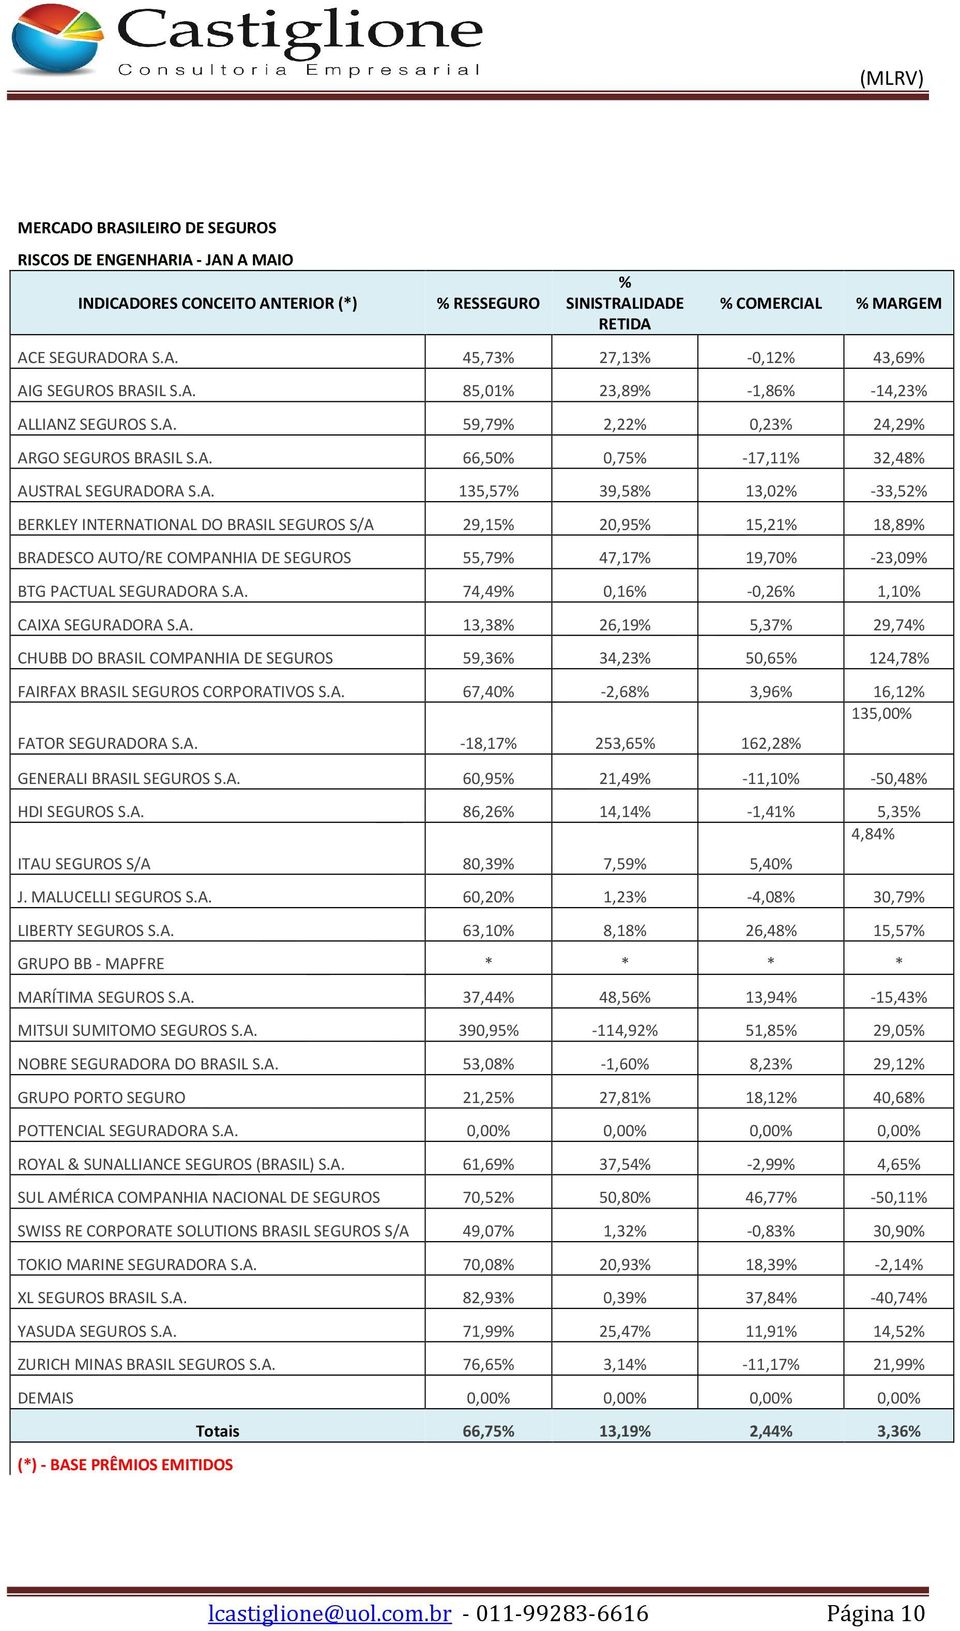 A. 74,49% 0,16% -0,26% 1,10% CAIXA SEGURADORA S.A. 13,38% 26,19% 5,37% 29,74% CHUBB DO BRASIL COMPANHIA DE SEGUROS 59,36% 34,23% 50,65% 124,78% FAIRFAX BRASIL SEGUROS CORPORATIVOS S.A. 67,40% -2,68% 3,96% 16,12% 135,00% FATOR SEGURADORA S.